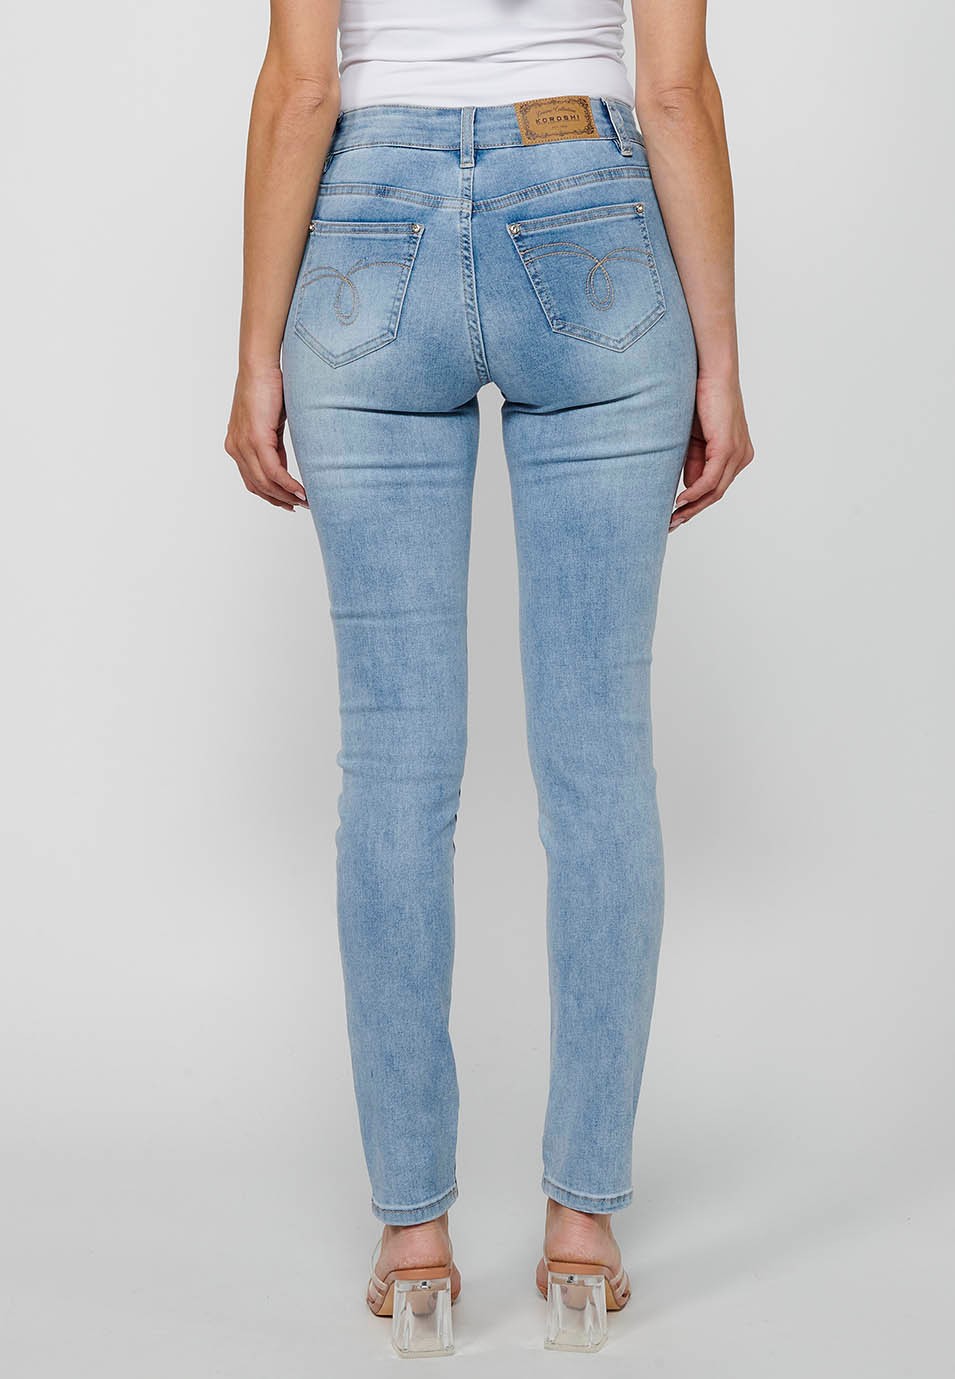 Lange, schmale Jeanshose mit floralen Details und Frontverschluss mit Reißverschluss und Knopf in Hellblau für Damen 8